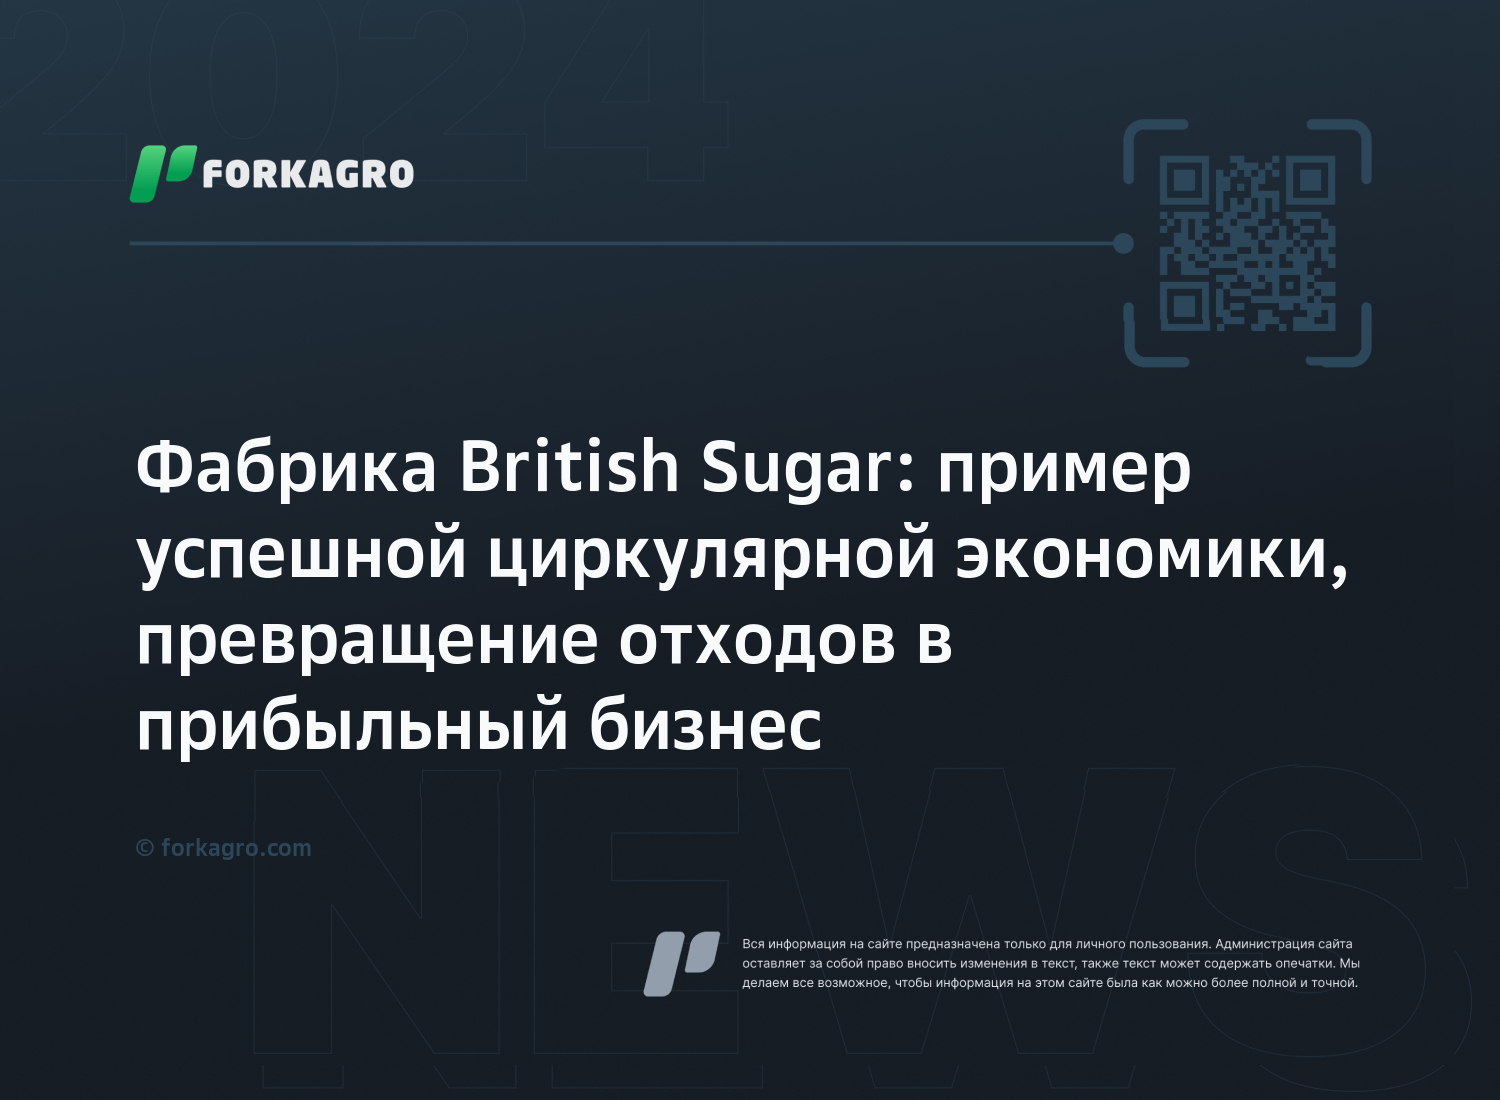 Фабрика British Sugar: пример успешной циркулярной экономики, превращение отходов в прибыльный бизнес